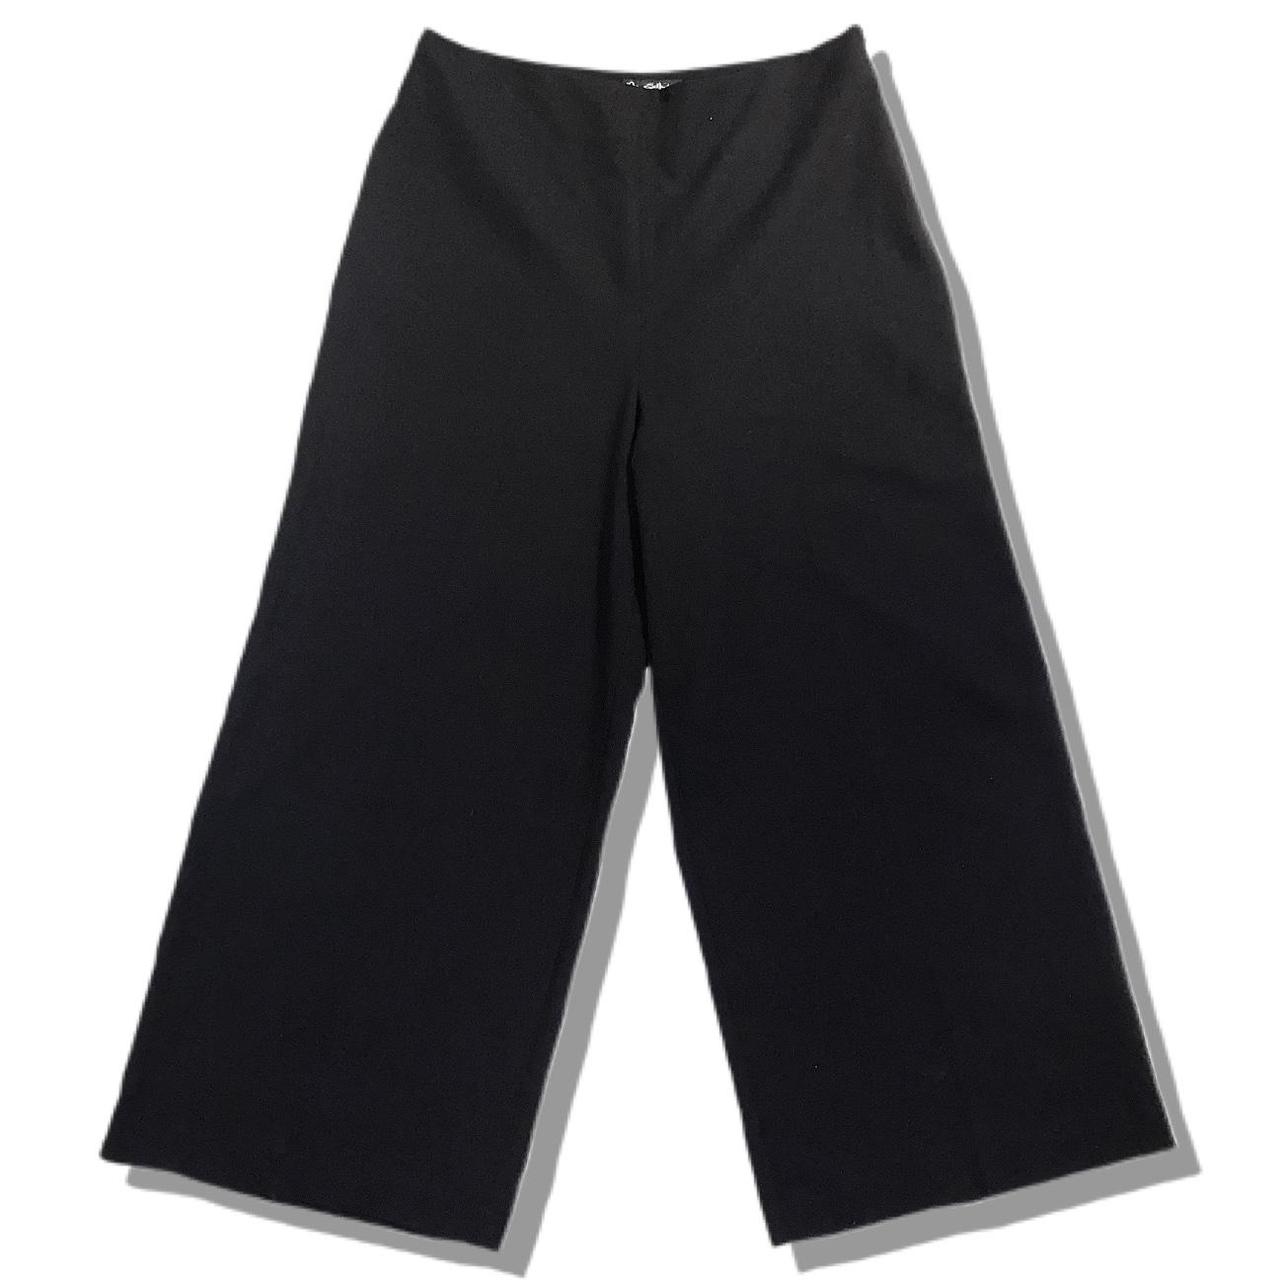 Product Image 2 - Miss Selfridge Smart Trousers 

💬Description: